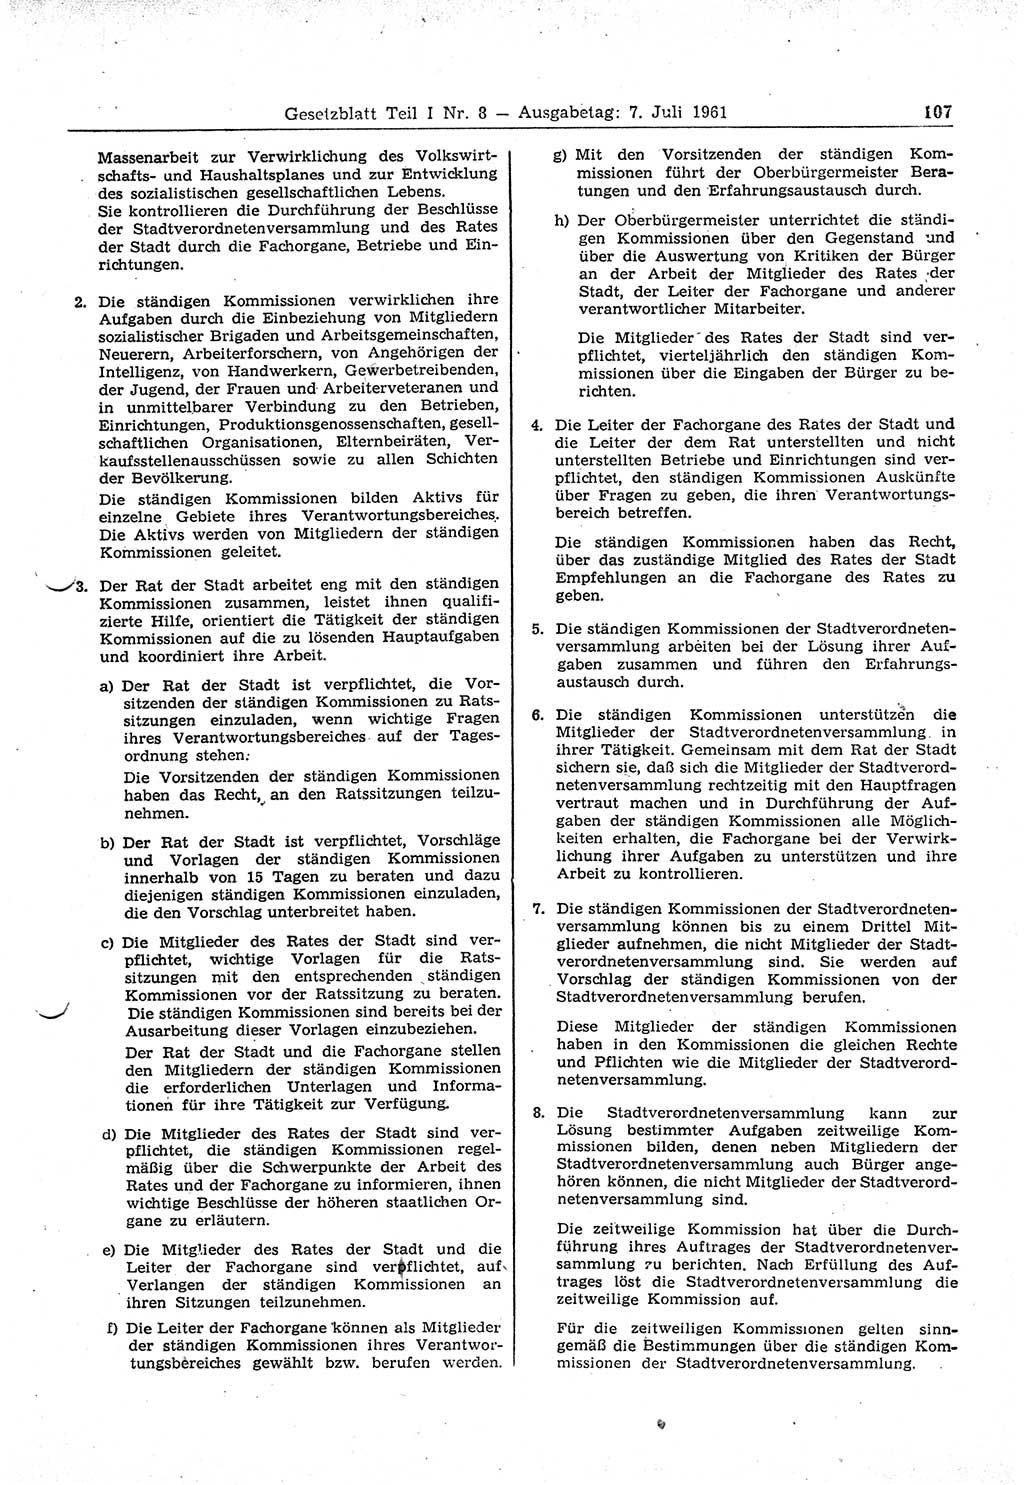 Gesetzblatt (GBl.) der Deutschen Demokratischen Republik (DDR) Teil Ⅰ 1961, Seite 107 (GBl. DDR Ⅰ 1961, S. 107)